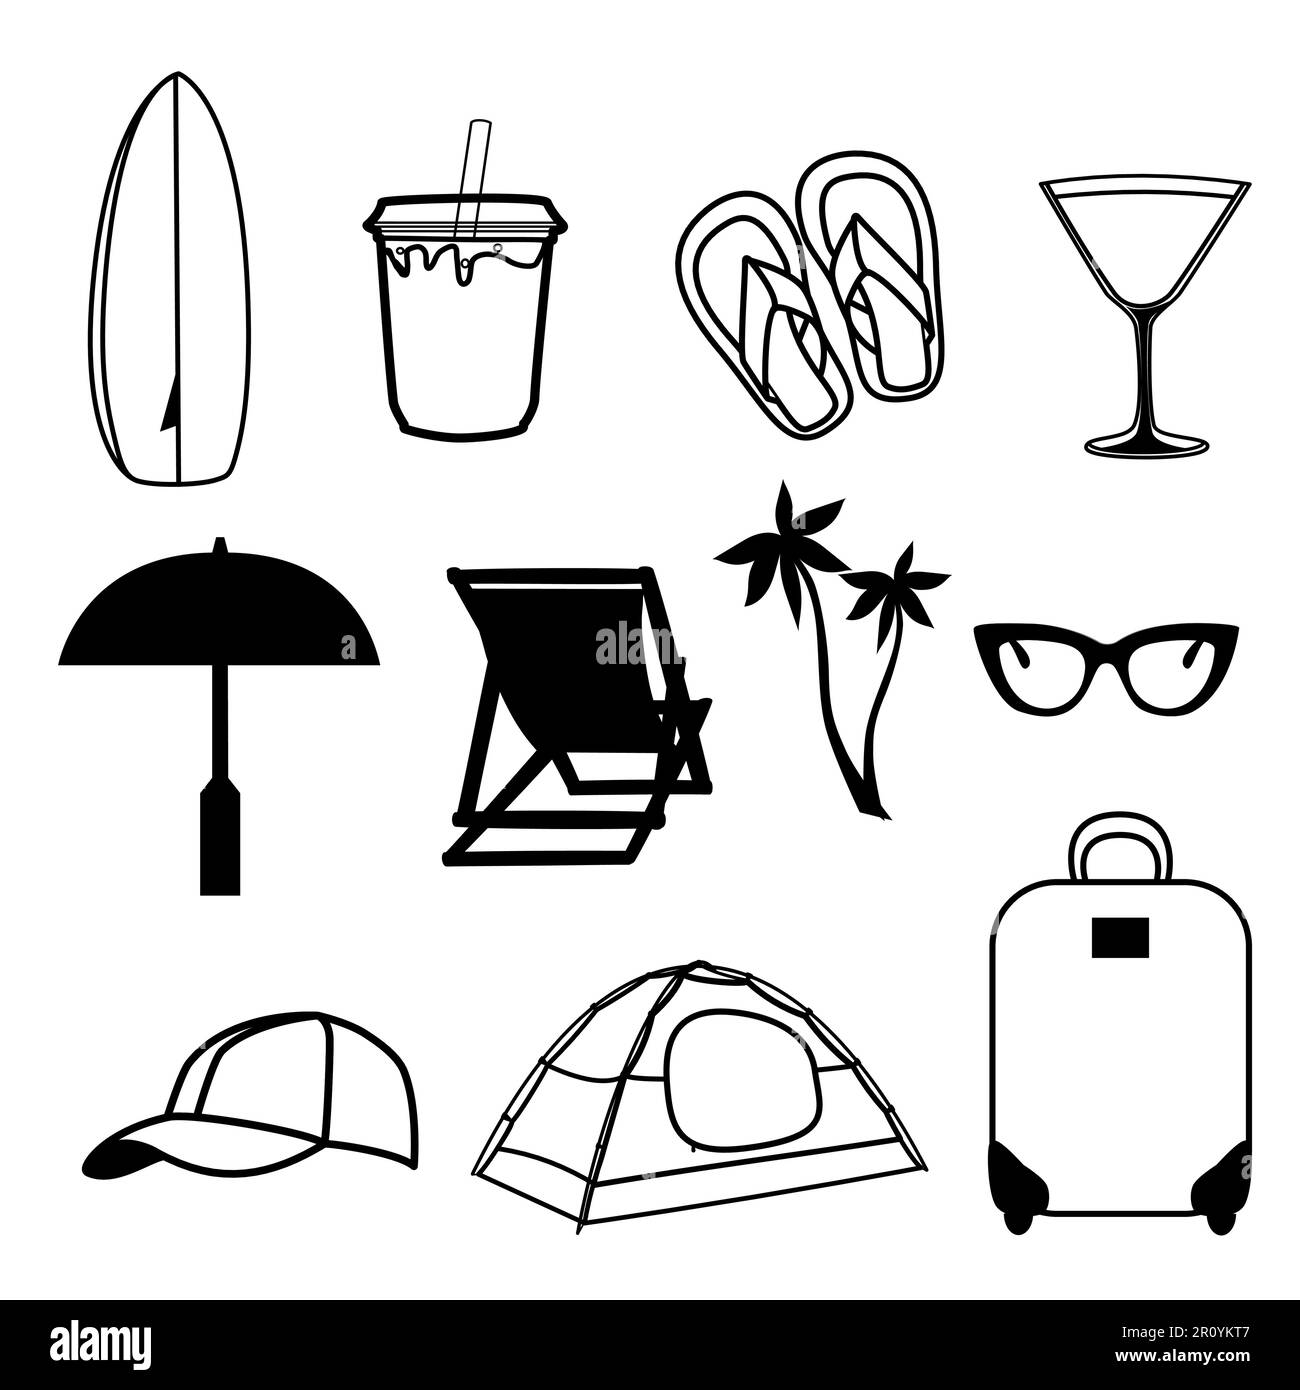 Icone di viaggio impostate nell'illustrazione vettoriale della tecnica del doodle Illustrazione Vettoriale